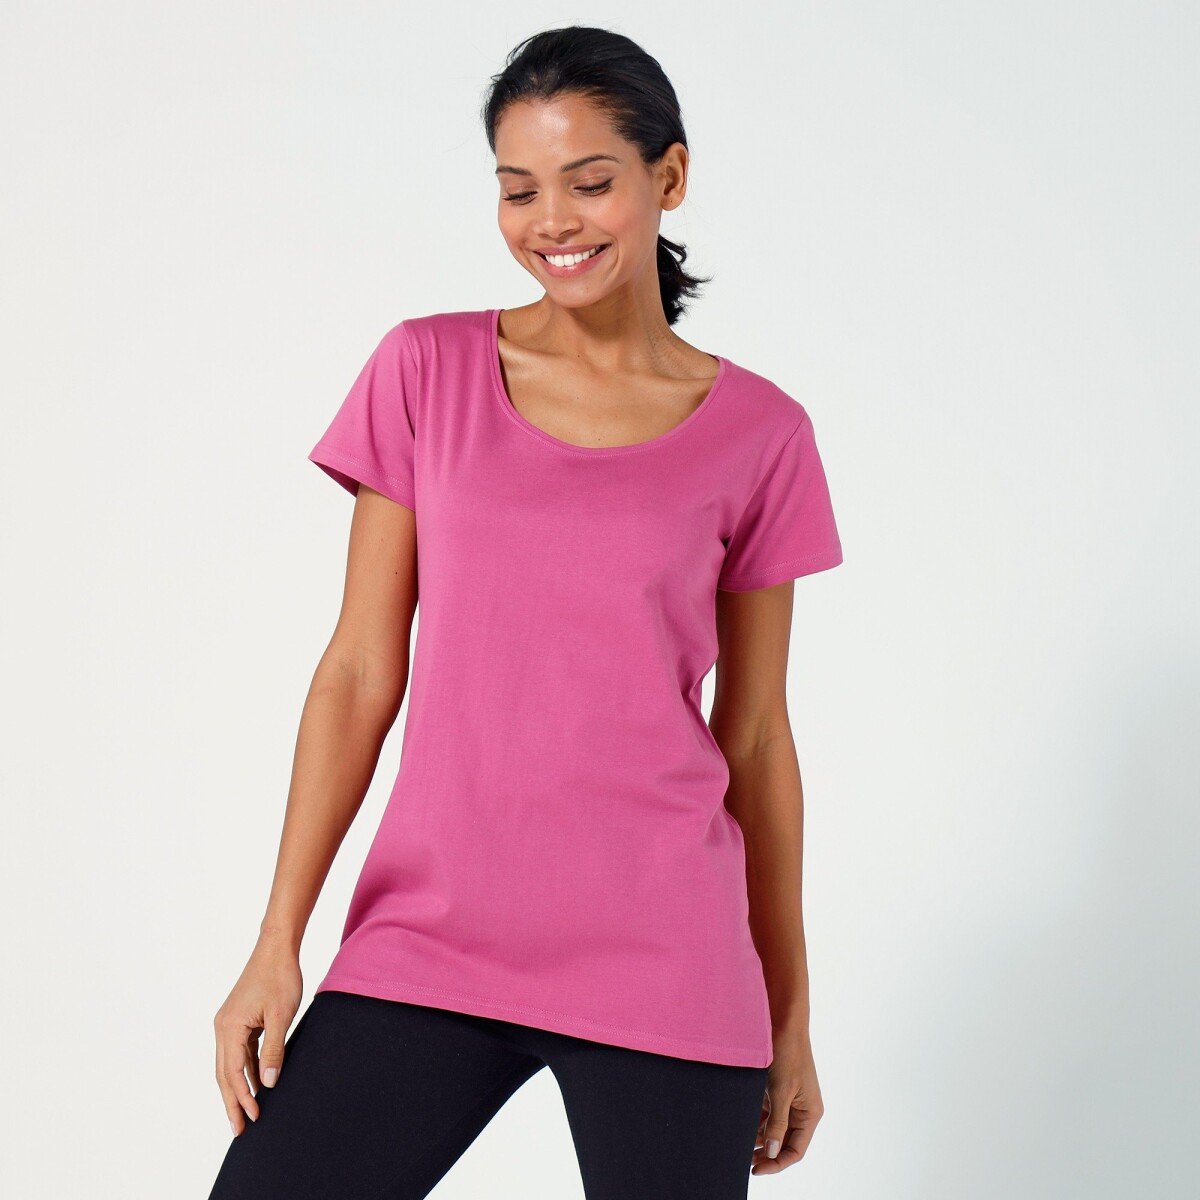 Jednofarebné tričko s krátkymi rukávmi, z bio bavlny, eco-friendly ružové drevo 34 36